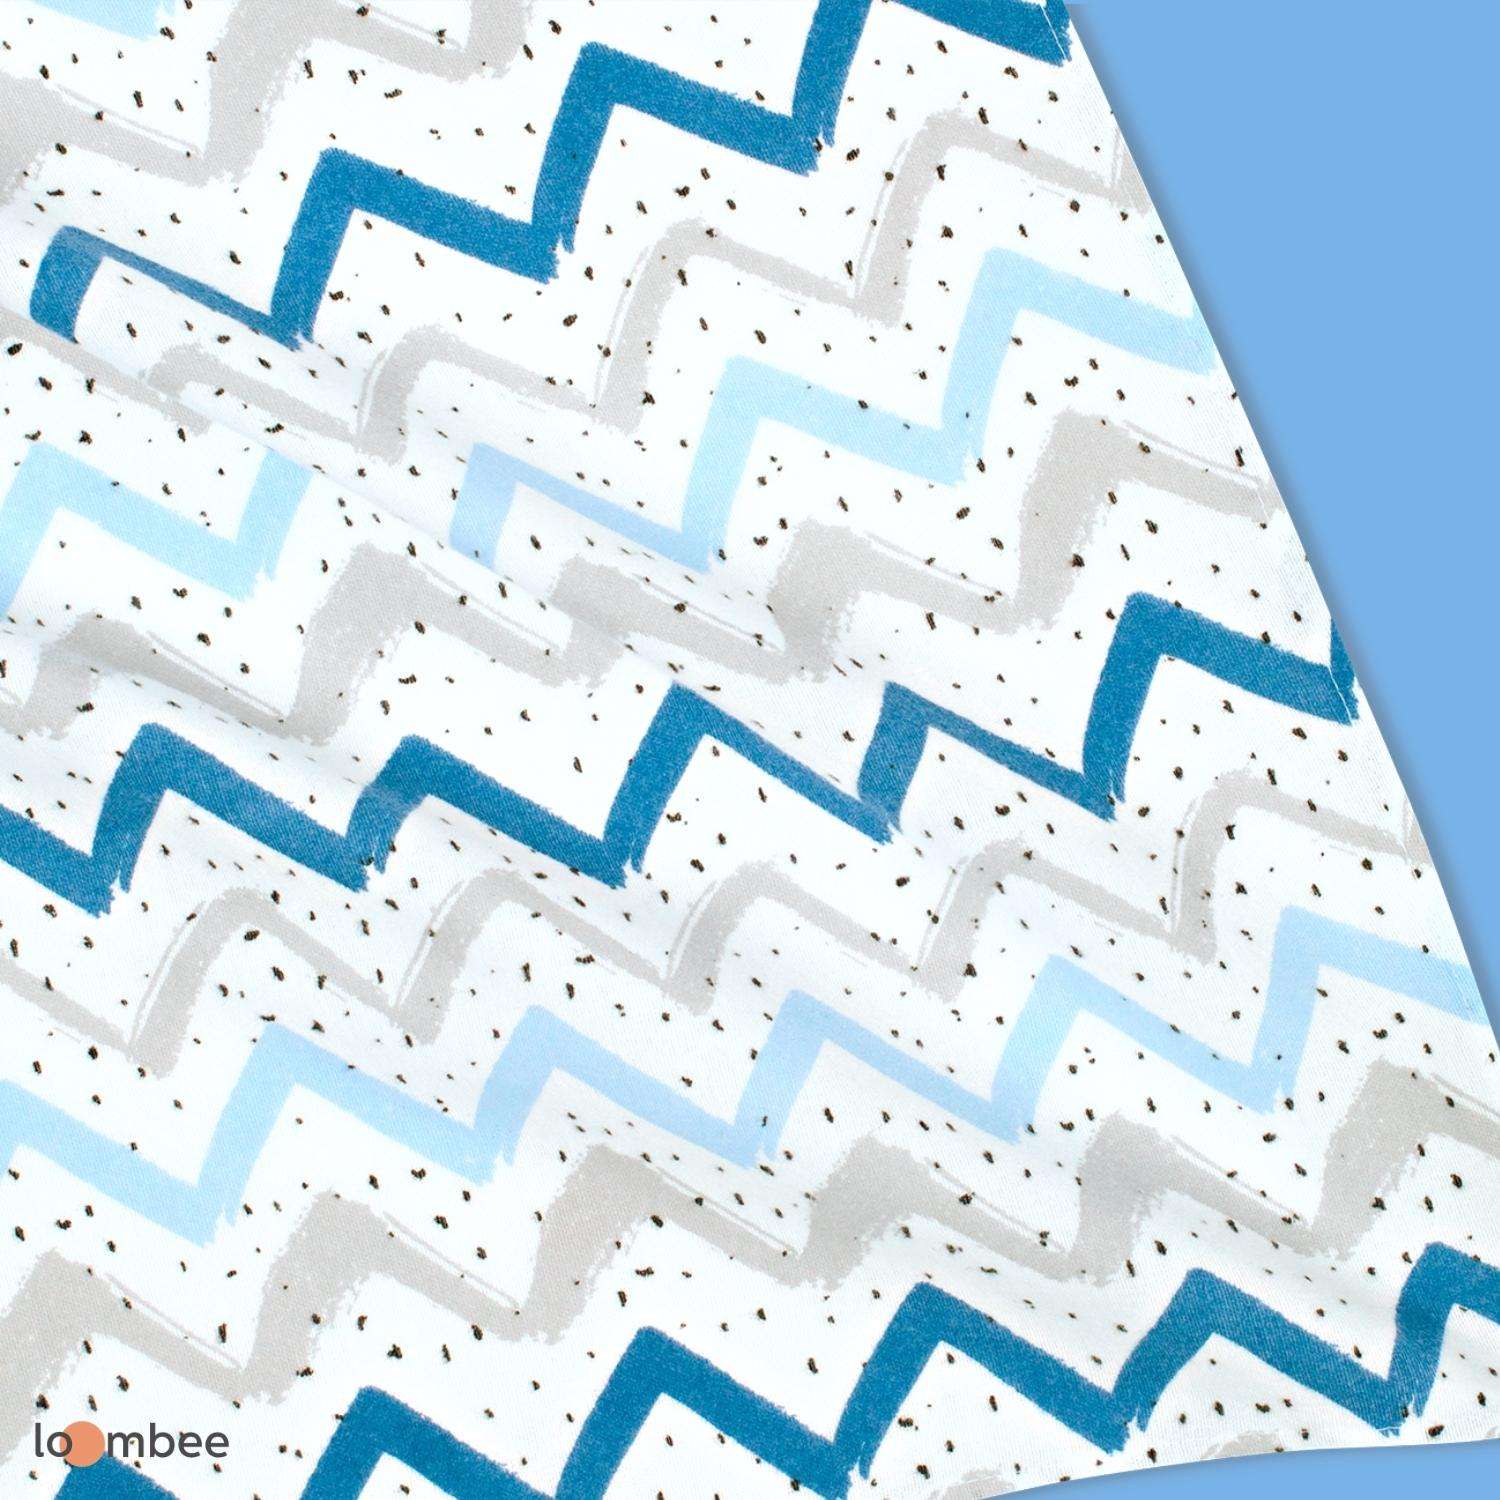 Пеленка loombee фланелевая супер мягкая Синие зигзаги 1 шт 100x100 см - фото 2